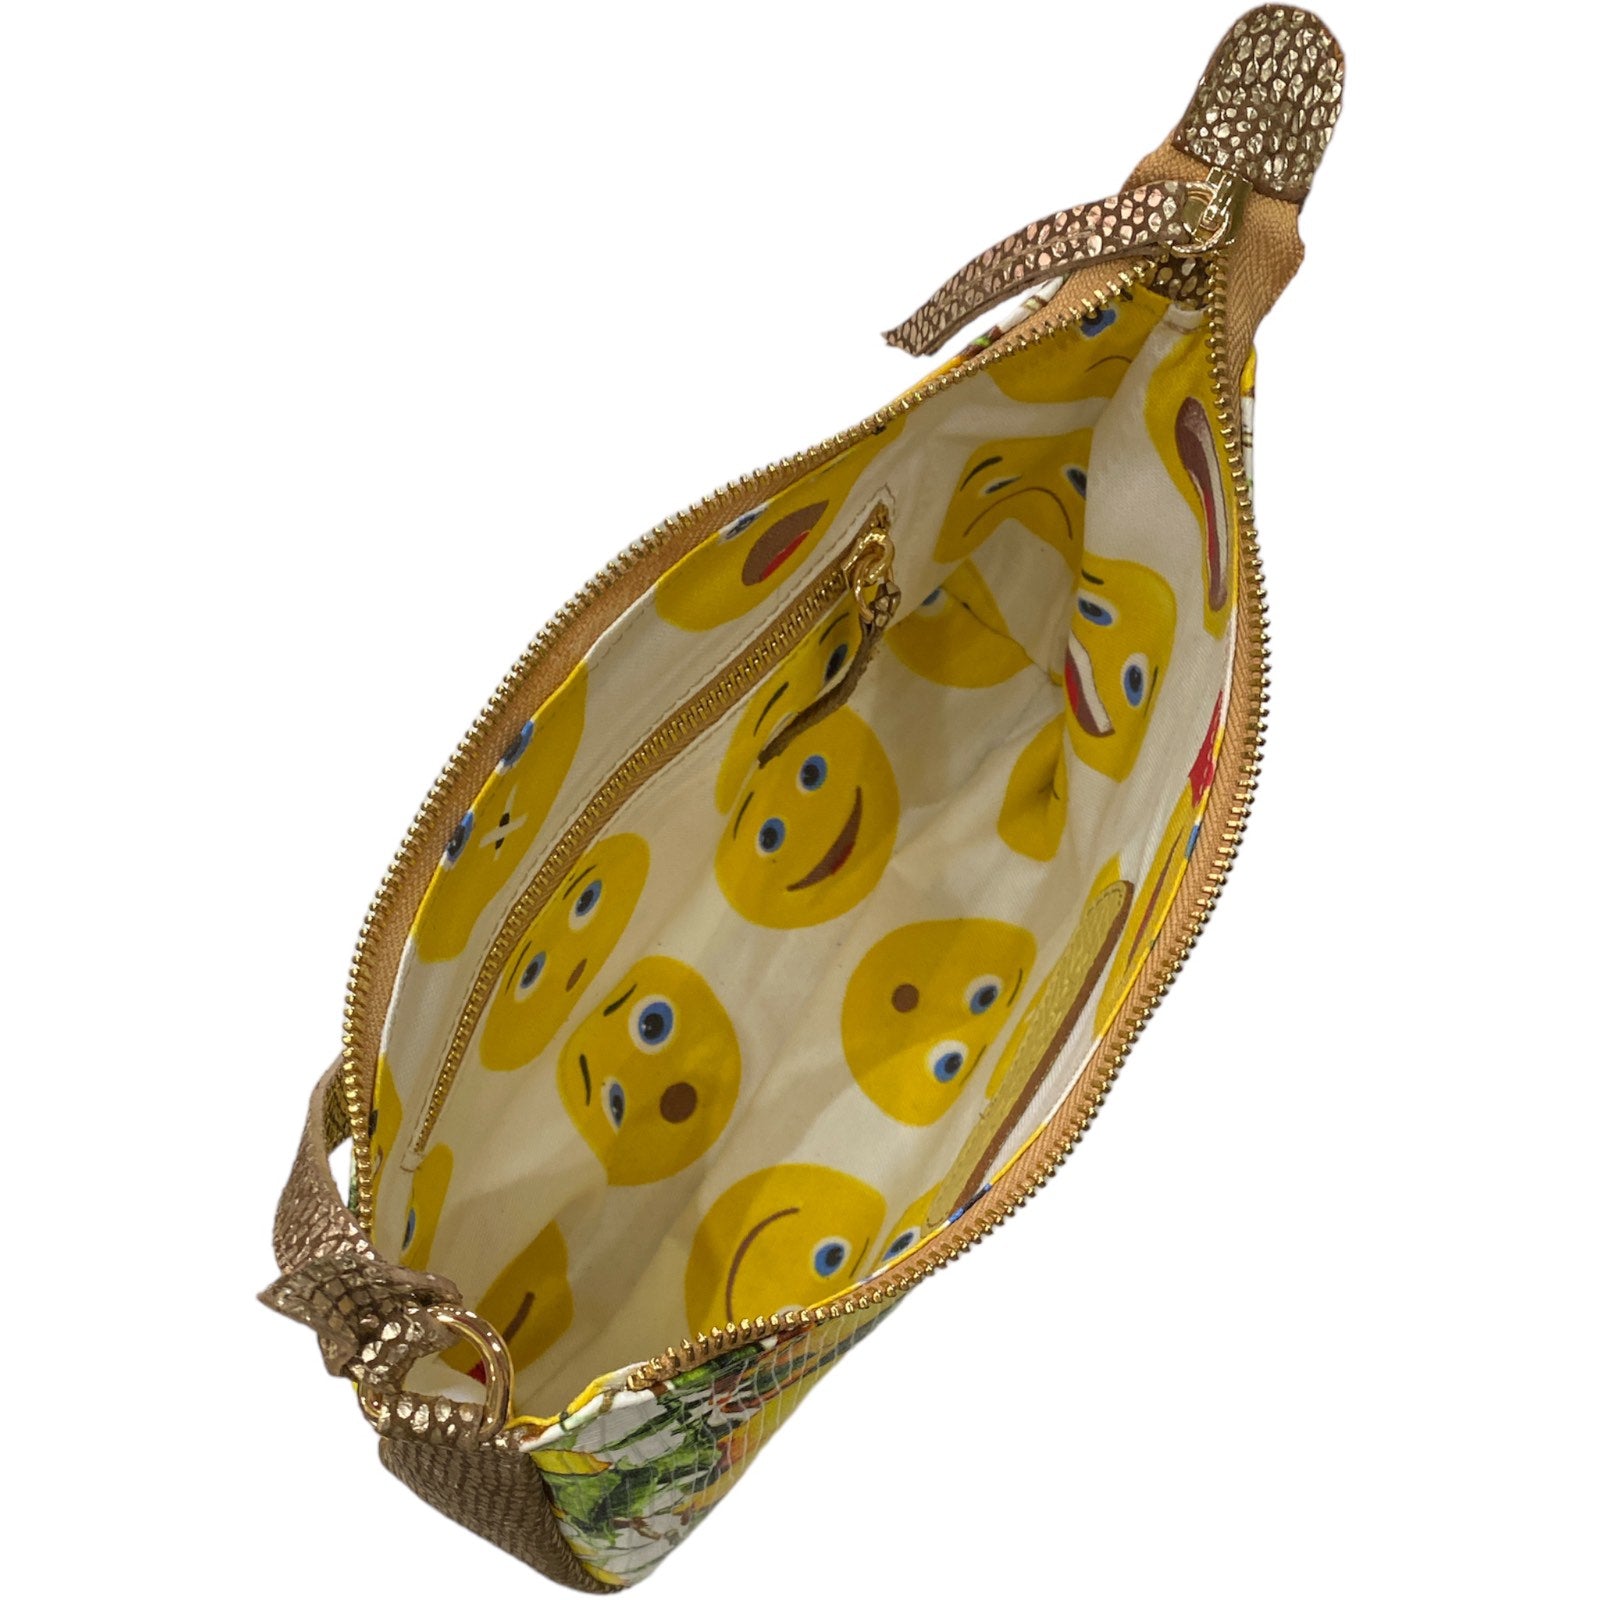 Natalie L. Art lemons and gold leather evening bag